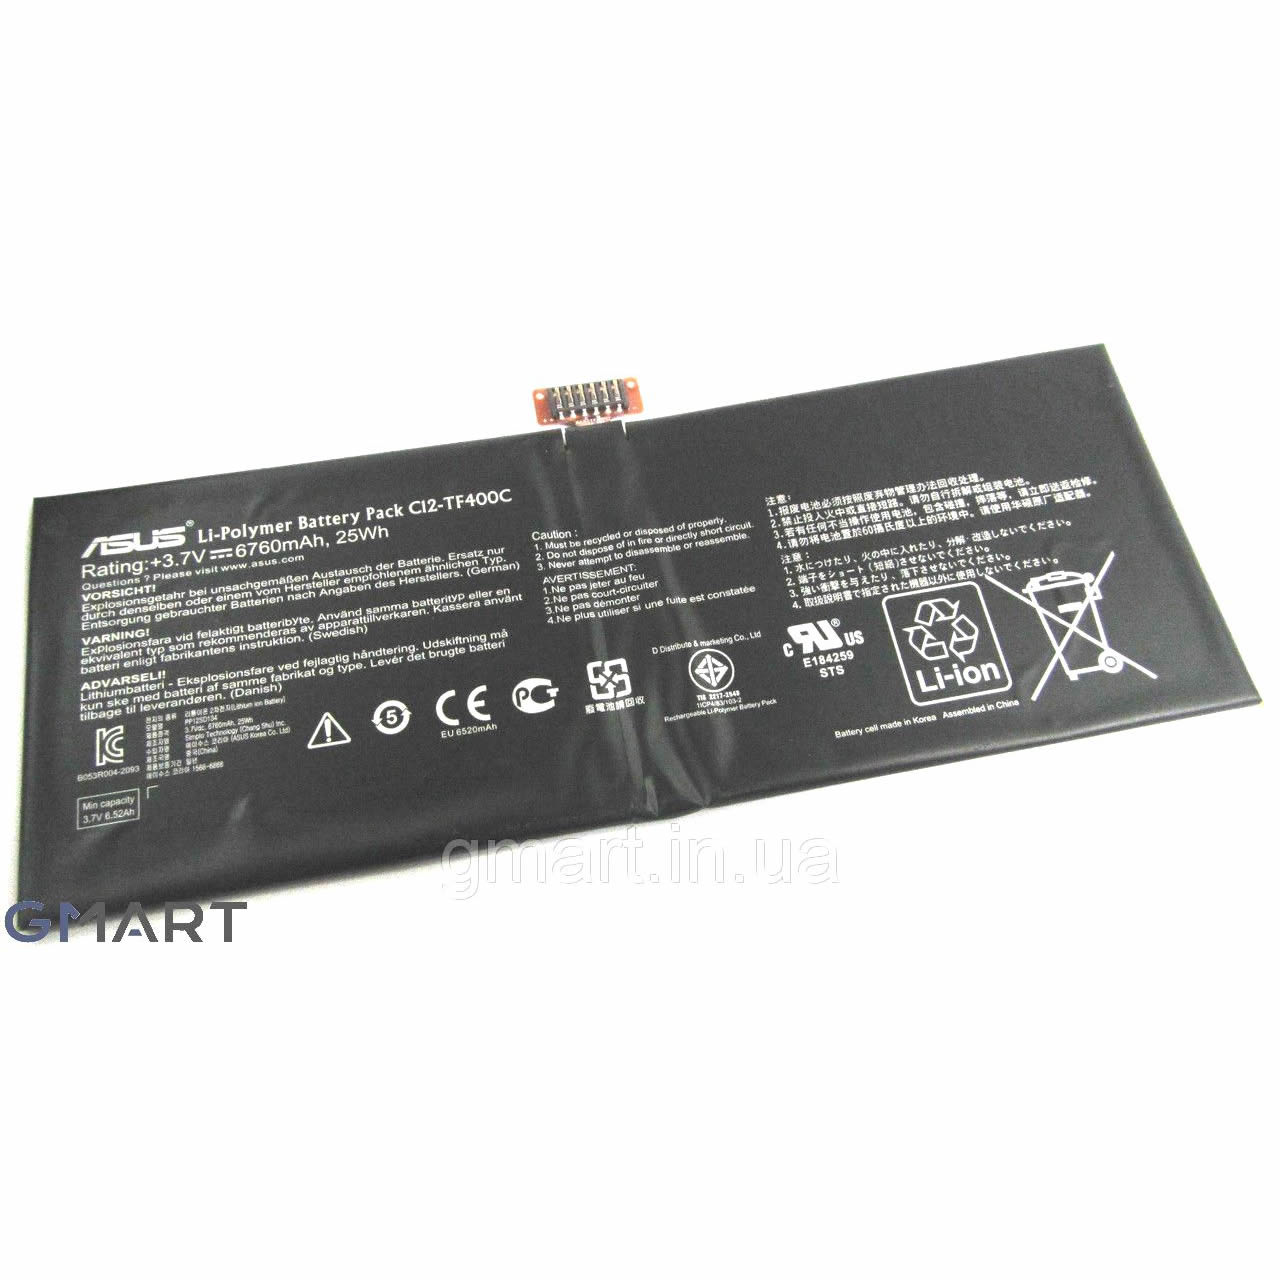 Asus C12-TF400C batterie originale 3.7V 6760mAh, 25Wh pour ordinateur portable Asus TF600T-1B017R, TF600TG-1B016R séries